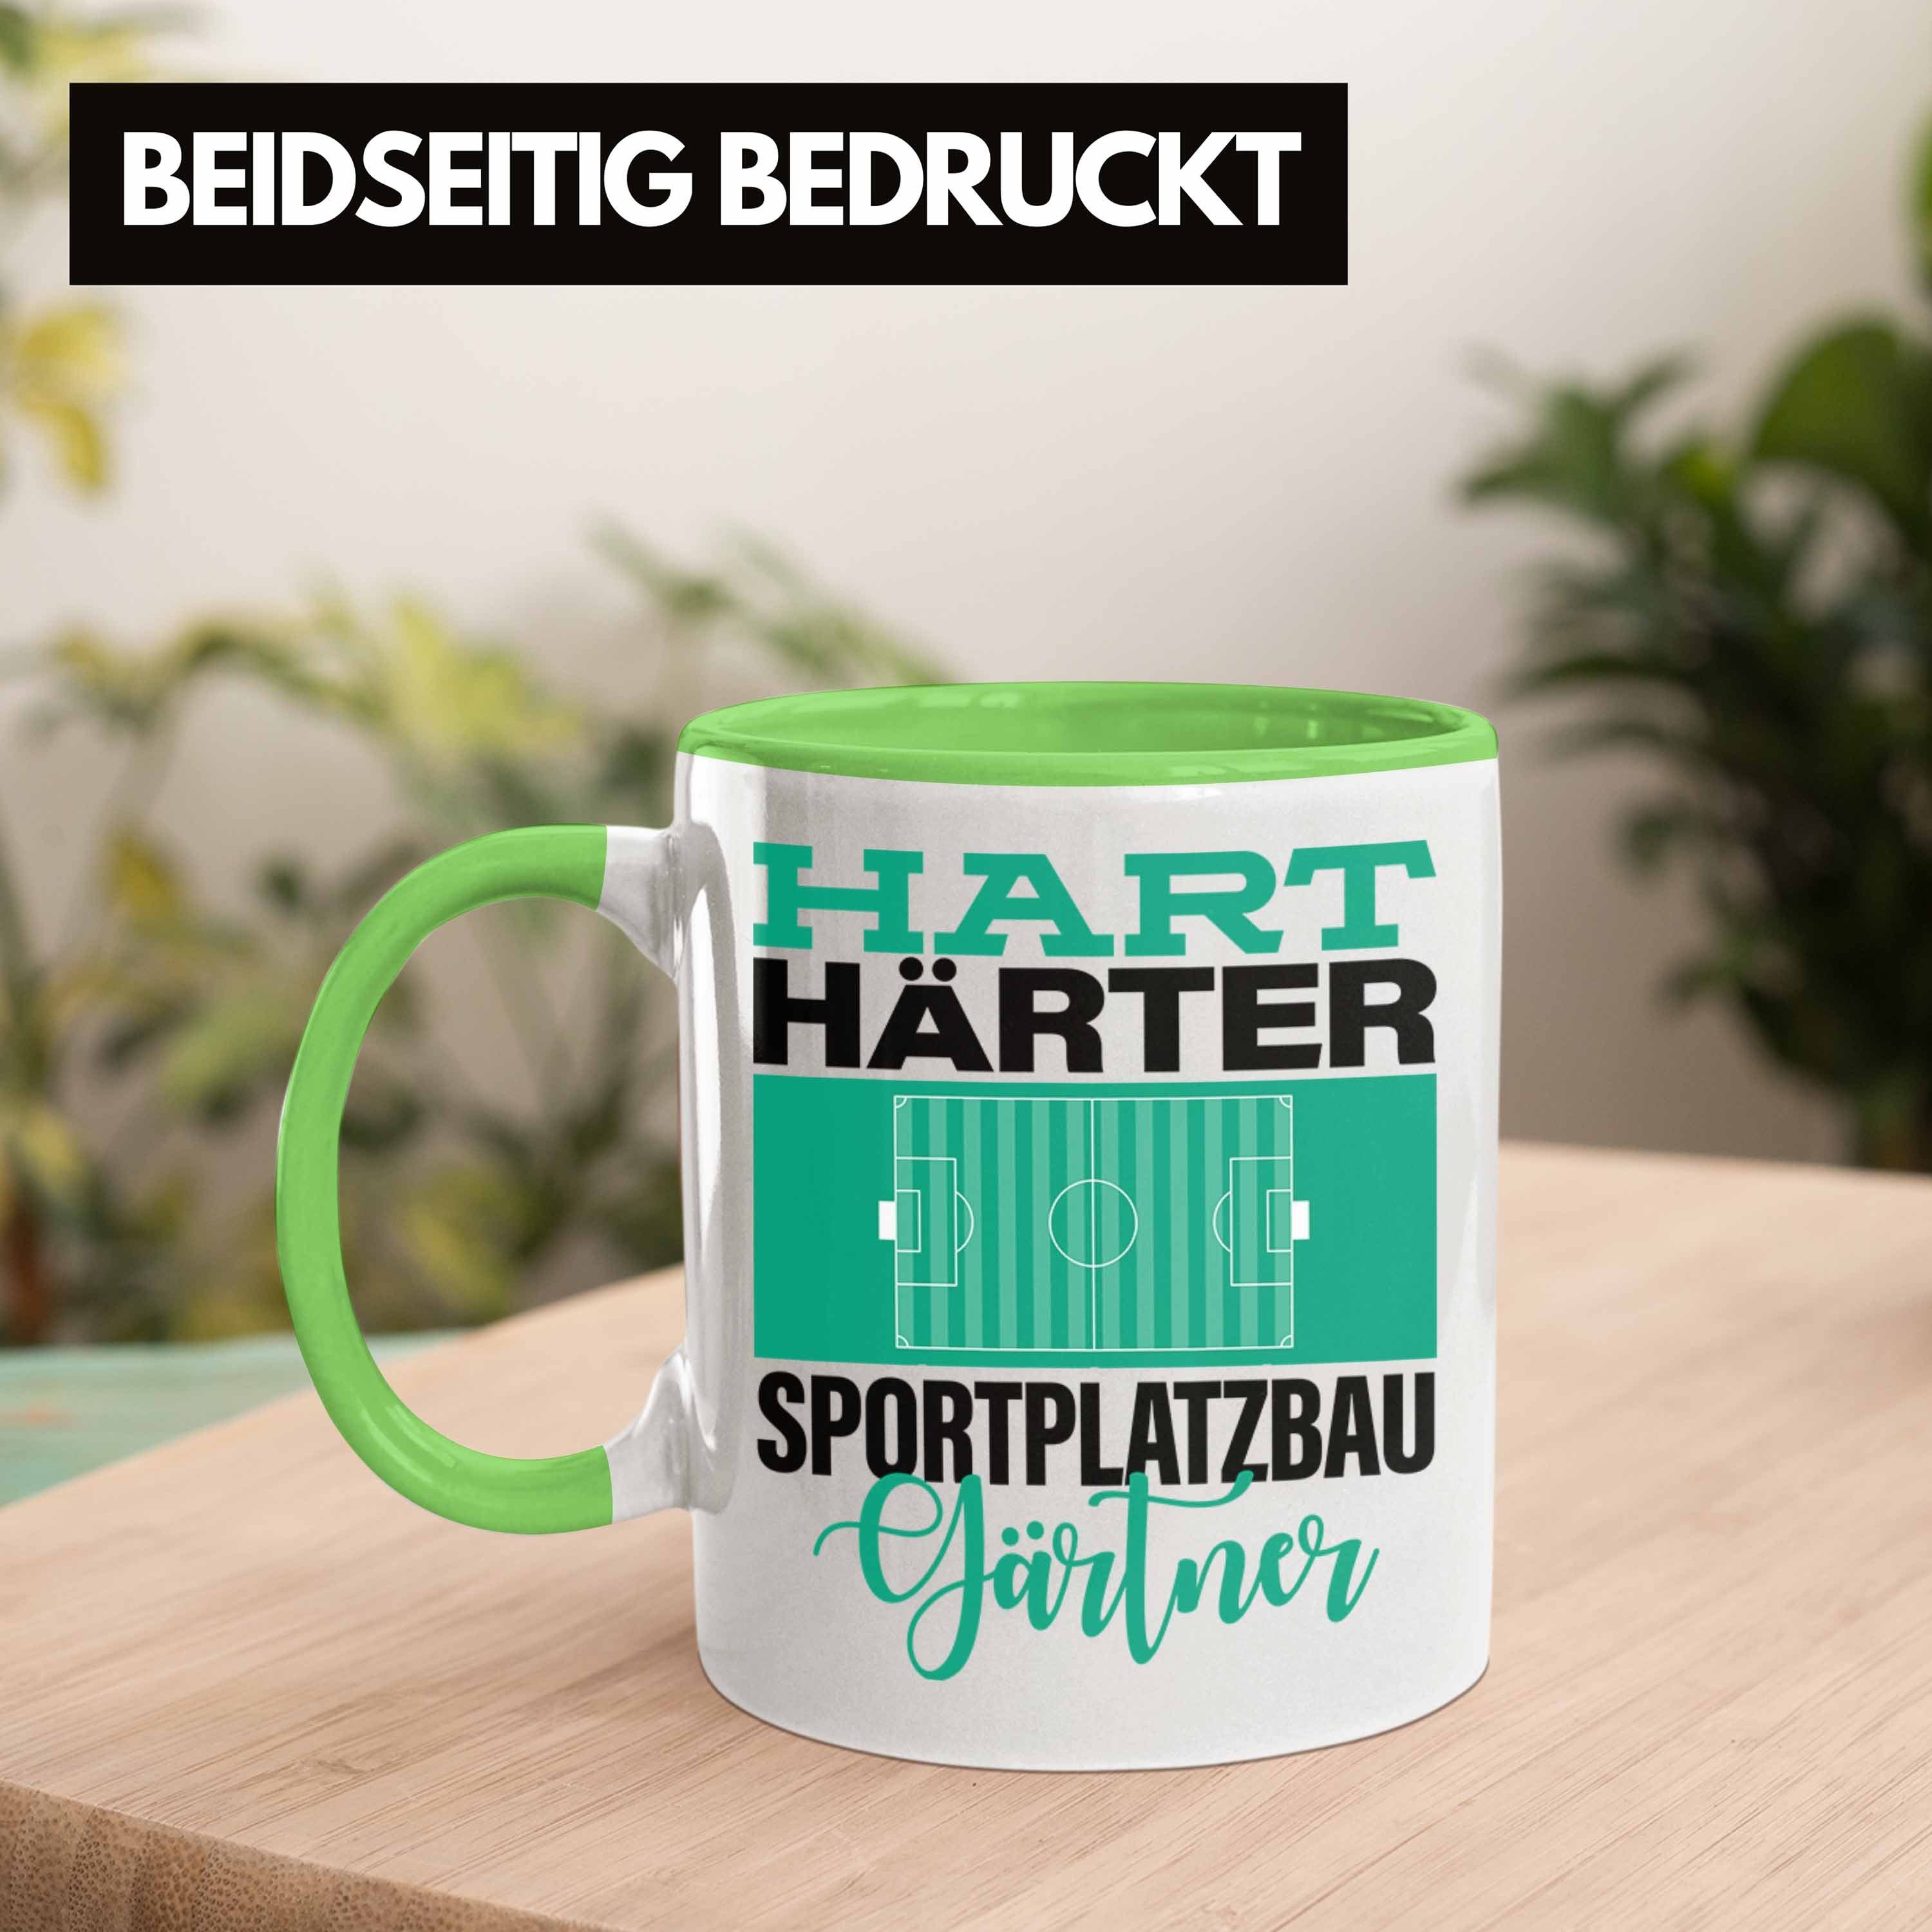 Sportplatzbaugärtner für "Hart Tasse Trendation Sportp Härter Grün Geschenkidee Spruch Tasse